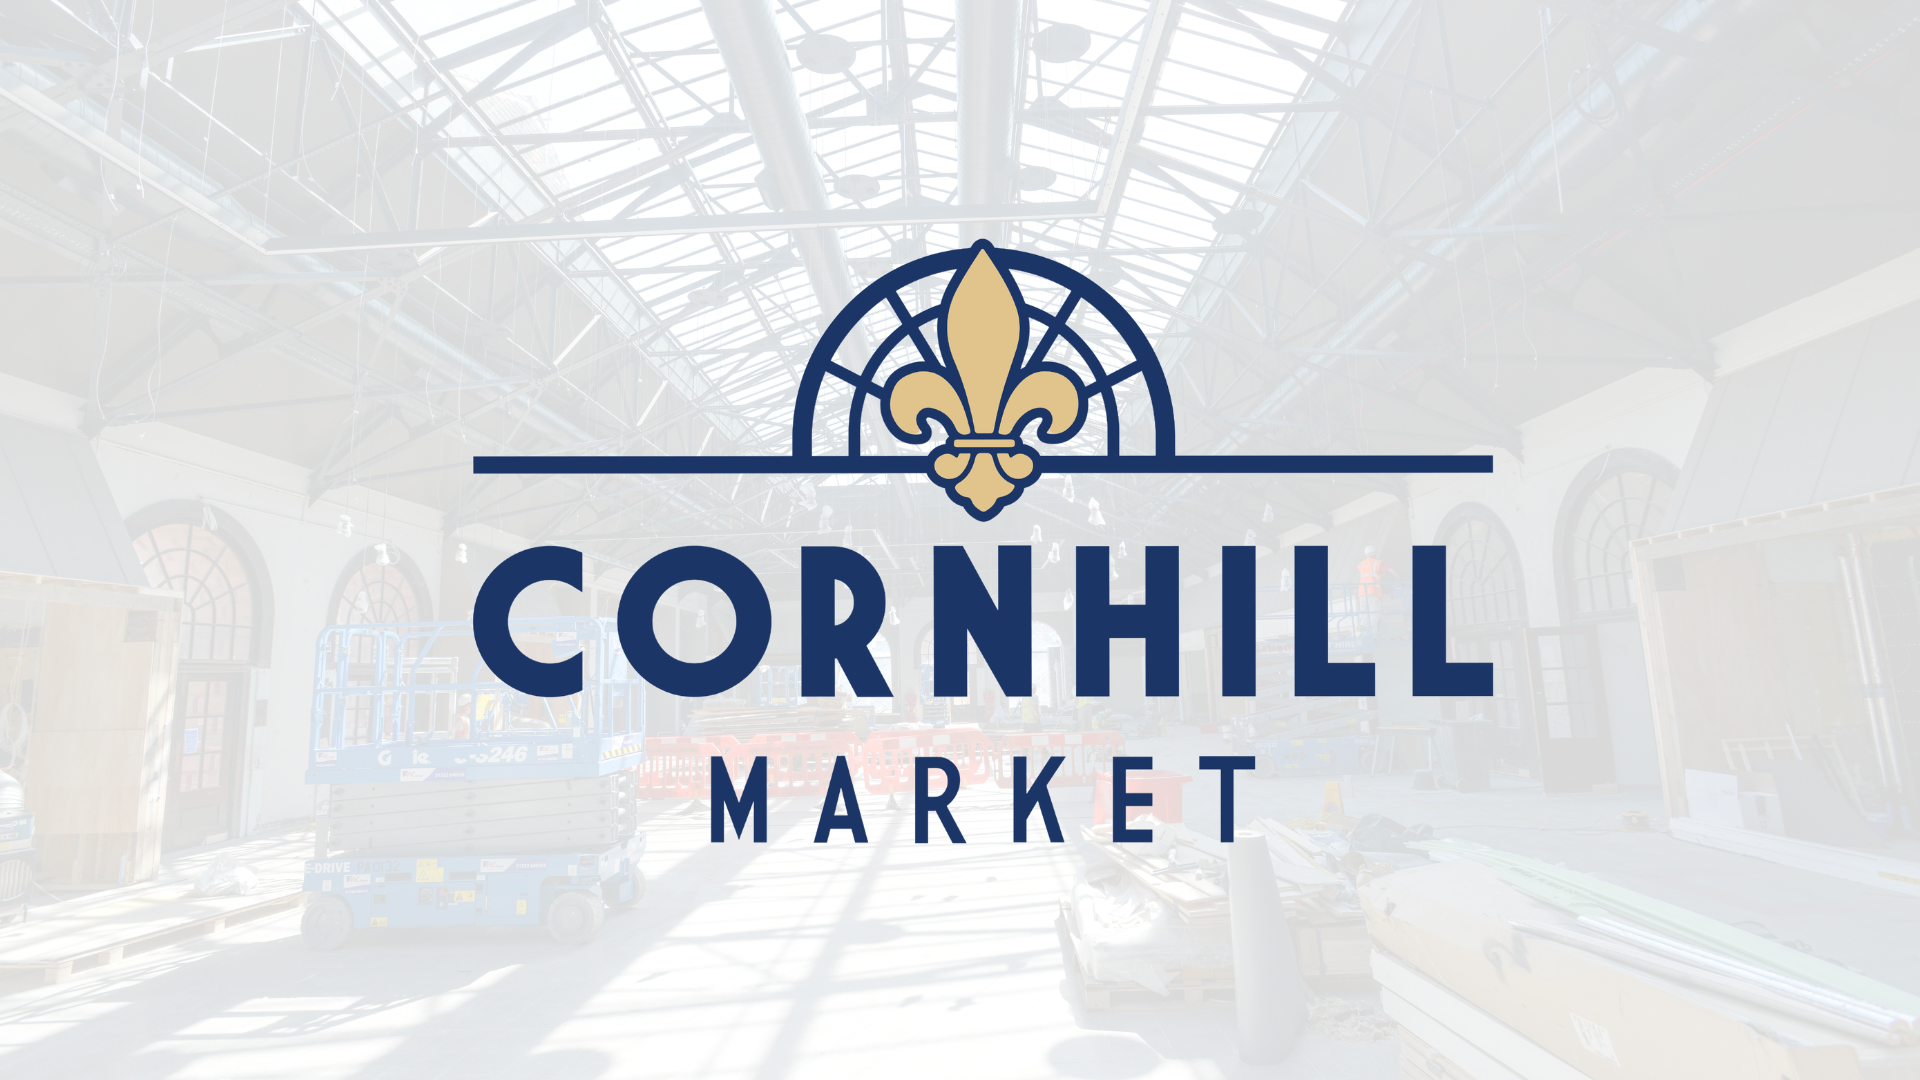 New cornhill market logo